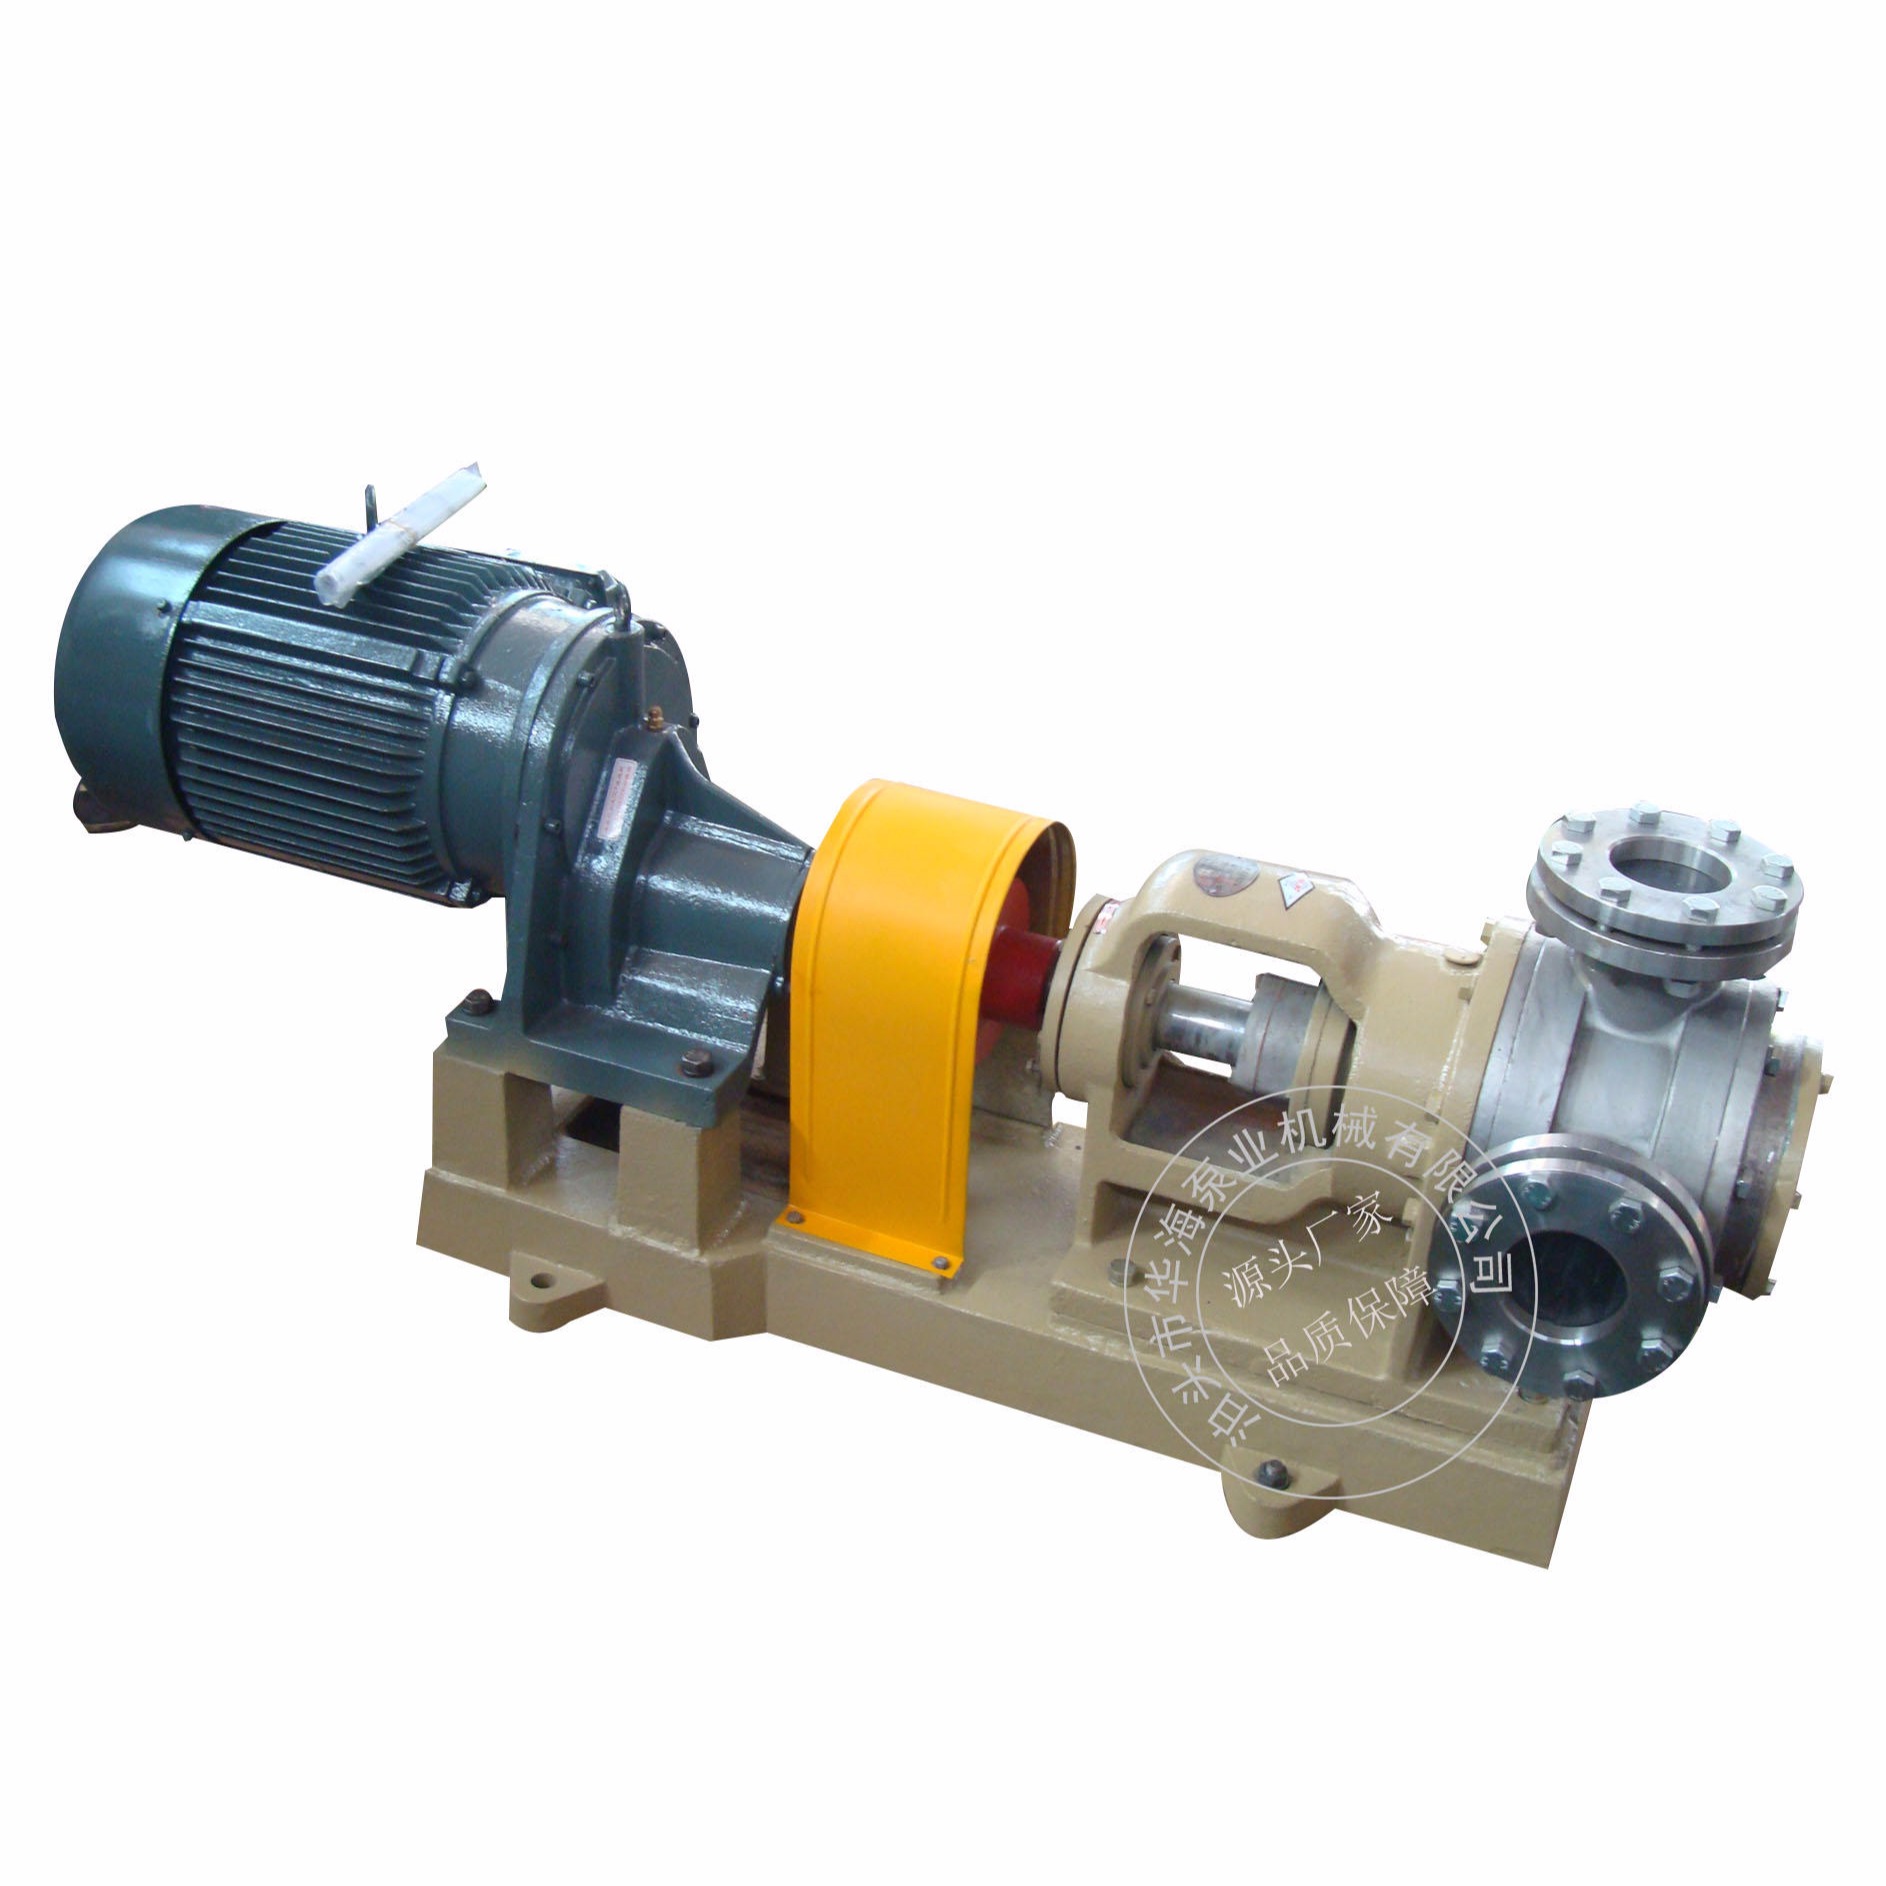 生产供应 高粘度转子泵 NYP30/1.0型高粘度保温转子泵 不锈钢耐磨齿轮泵 涂料 糖浆泵